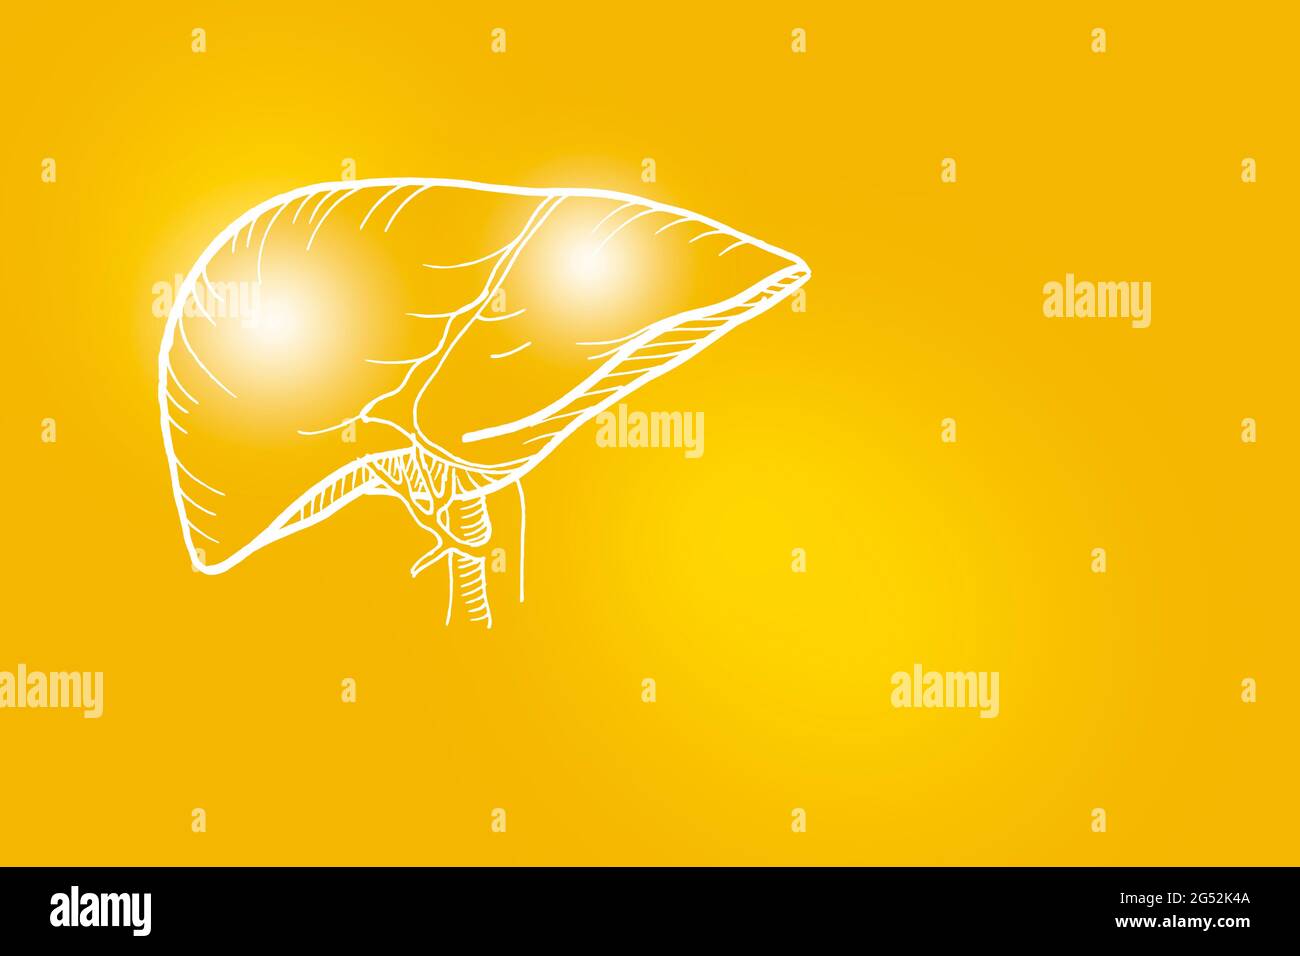 Illustrazione Handrawn del fegato umano su sfondo giallo. Set medico-scientifico con i principali organi umani con spazio di copia vuoto per testo o infografica. Foto Stock